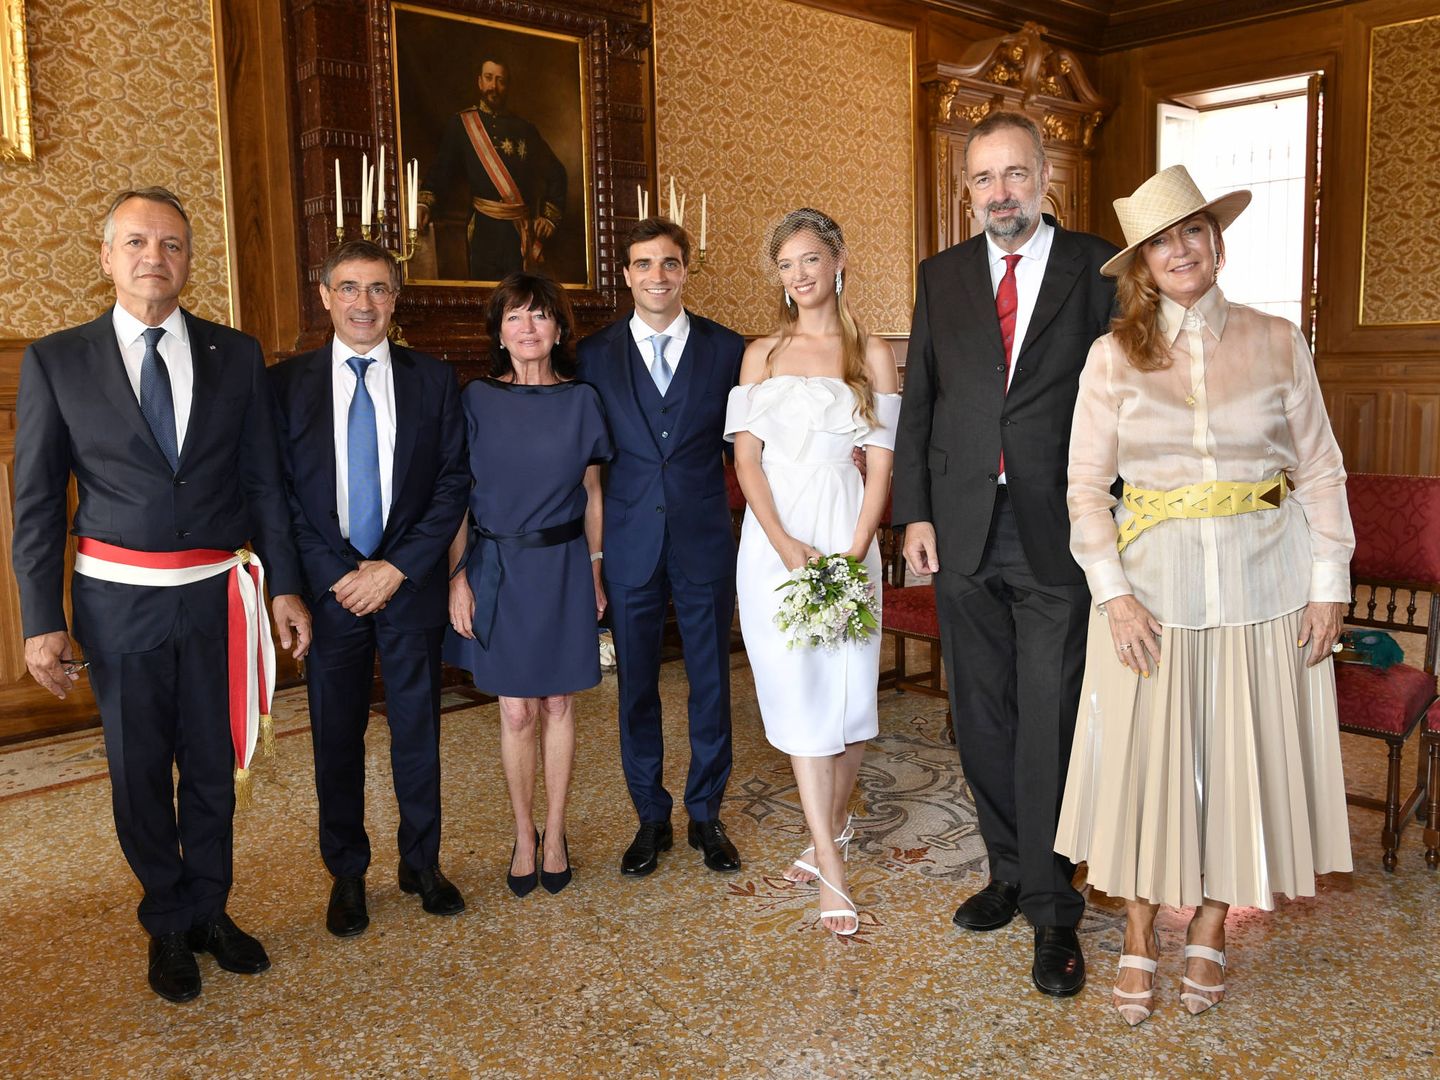 La boda de Eleonore de Habsburgo. (Getty)